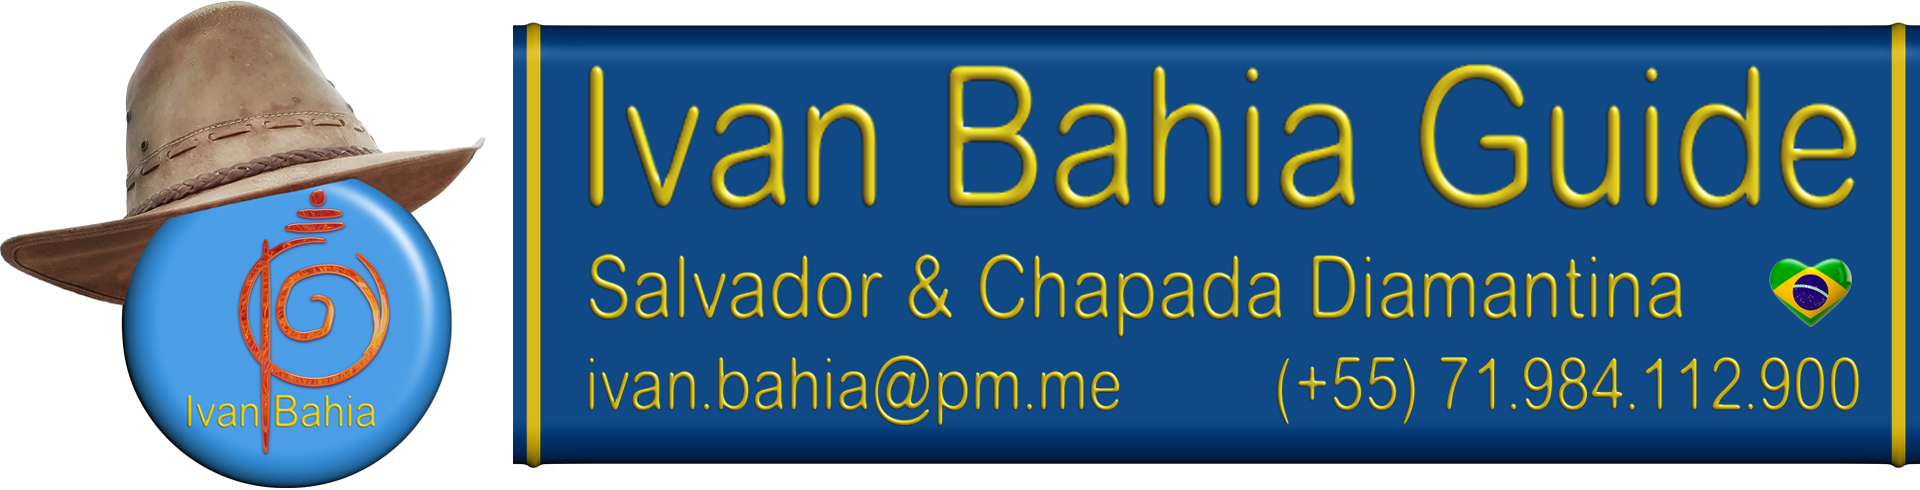 logo Ivan Bahia Guide Chapada Diamantina Brazil, Bahia Metisse, bahiametisse, cassi, Dirck van Kerckhove, Fernando Bingre, guide francophone organise séjour / voyage à Salvador da Bahia / Brésil.